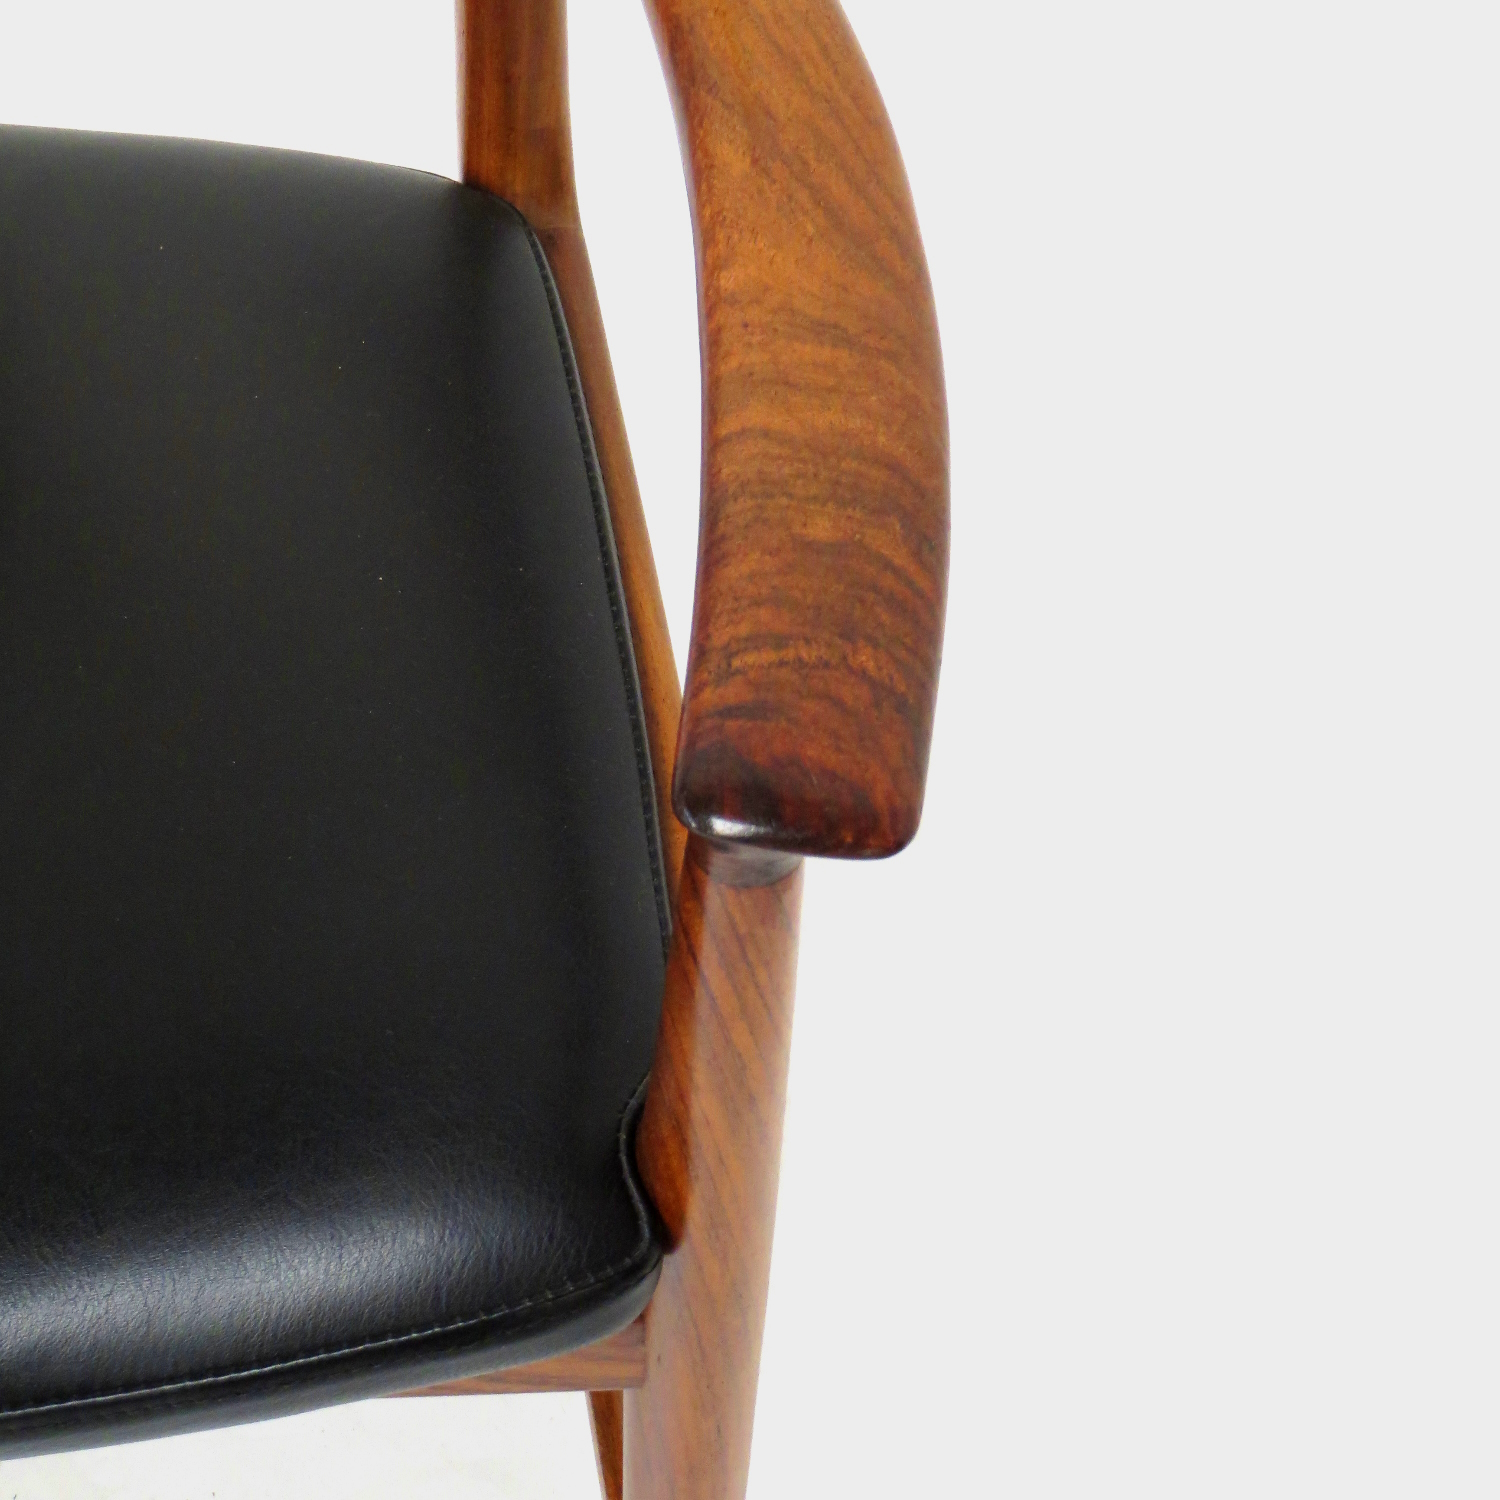 Detailfoto van de armleuning van één van de twee palissander bureaustoelen / stoelen met armleuningen